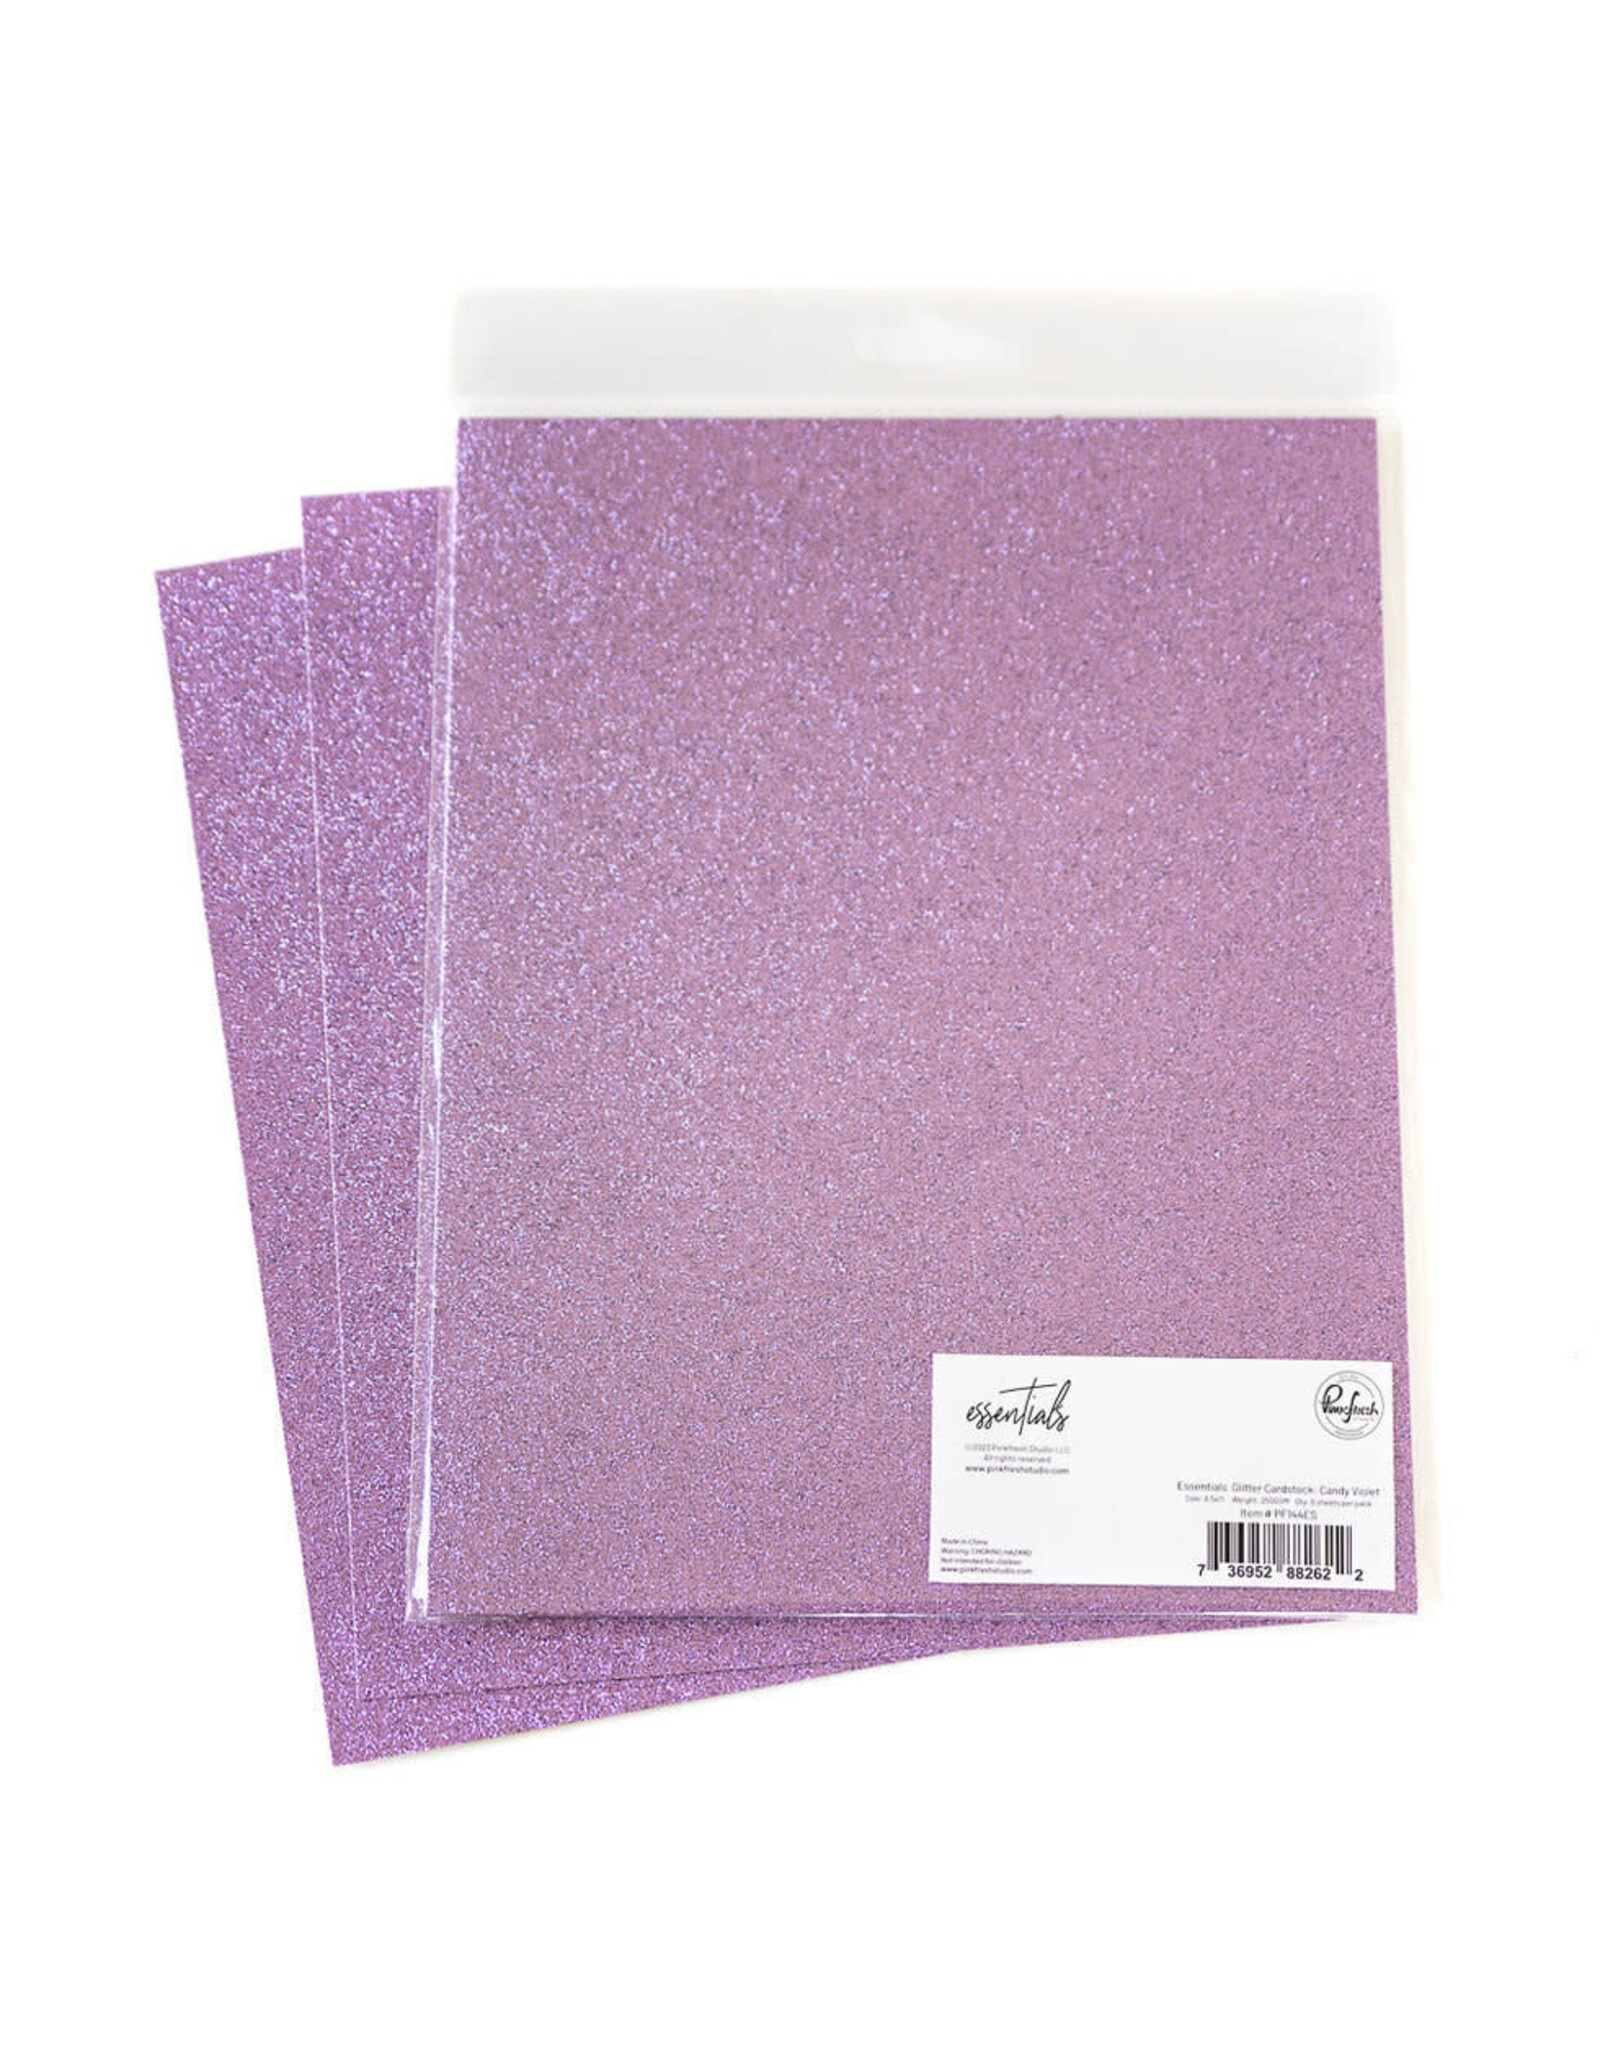 PINKFRESH STUDIO Essentials Glitter Cardstock: Candy Violet